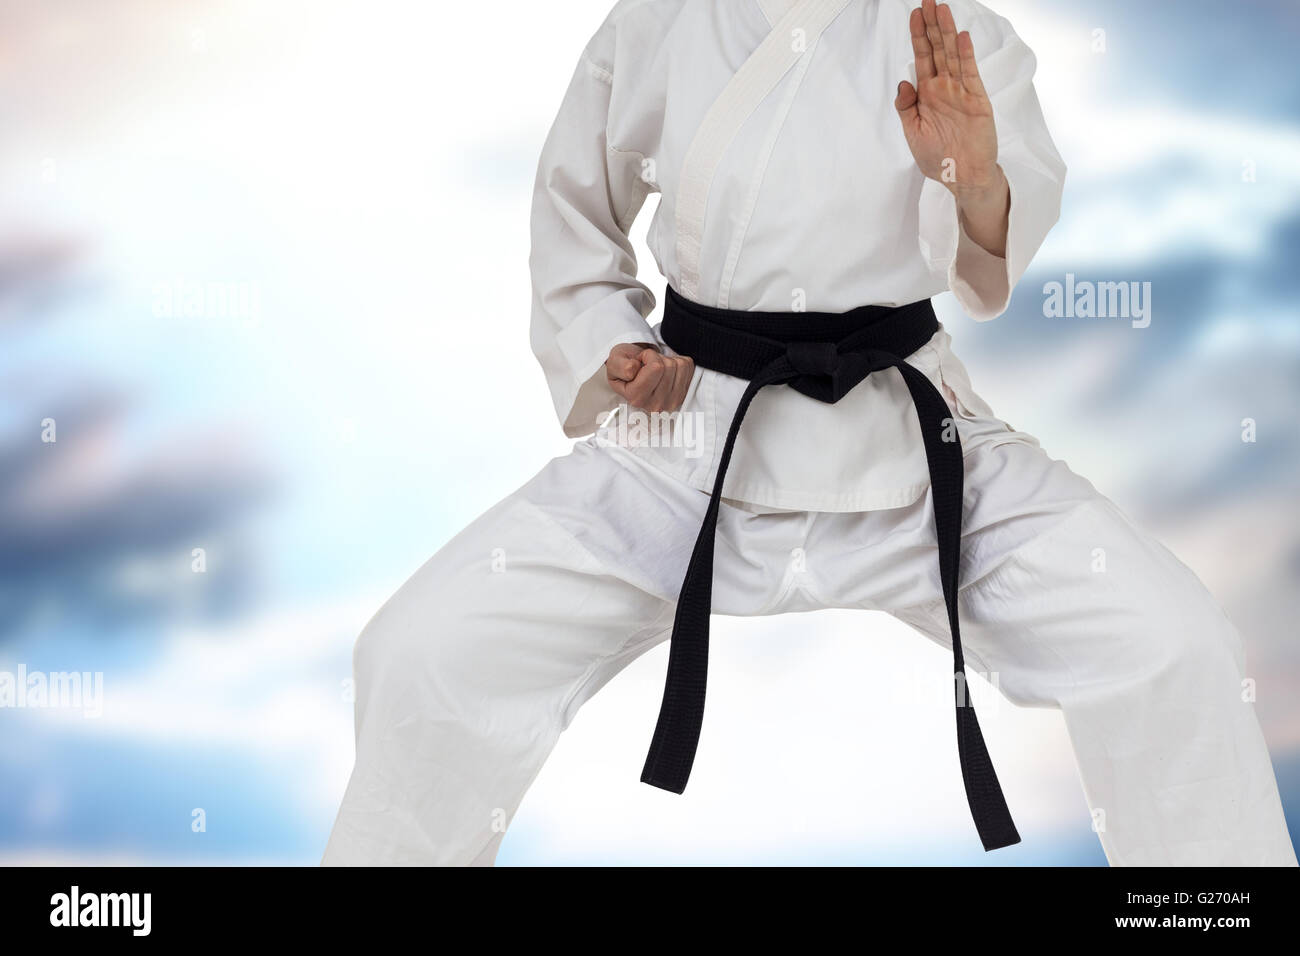 Immagine composita del fighter eseguendo il karate posizione Foto Stock